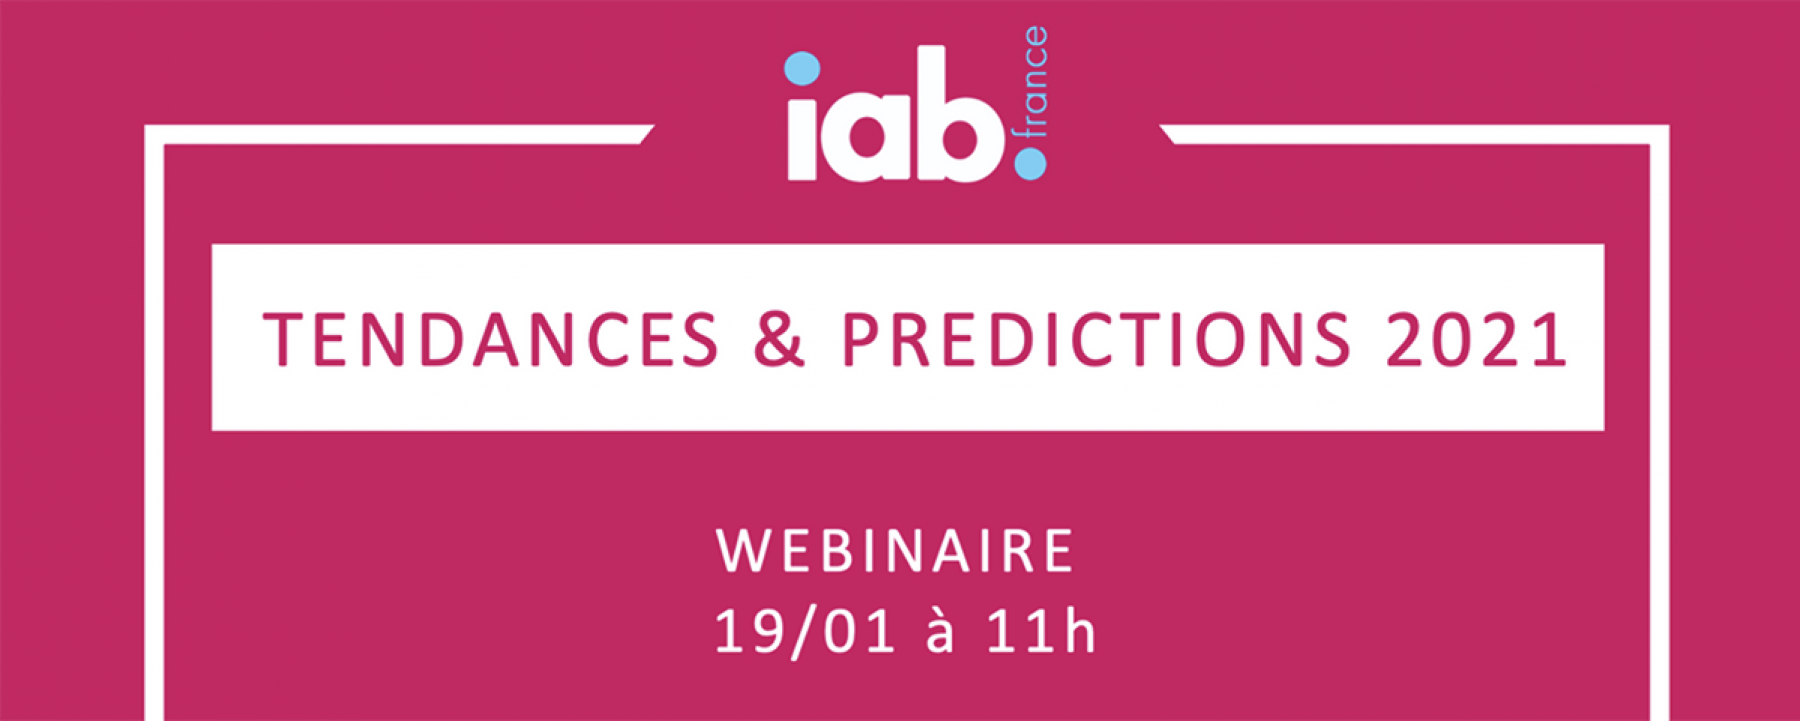 Tendances & prédictions 2021, un webinaire organisé par l'IAB le 19 janvier 2021